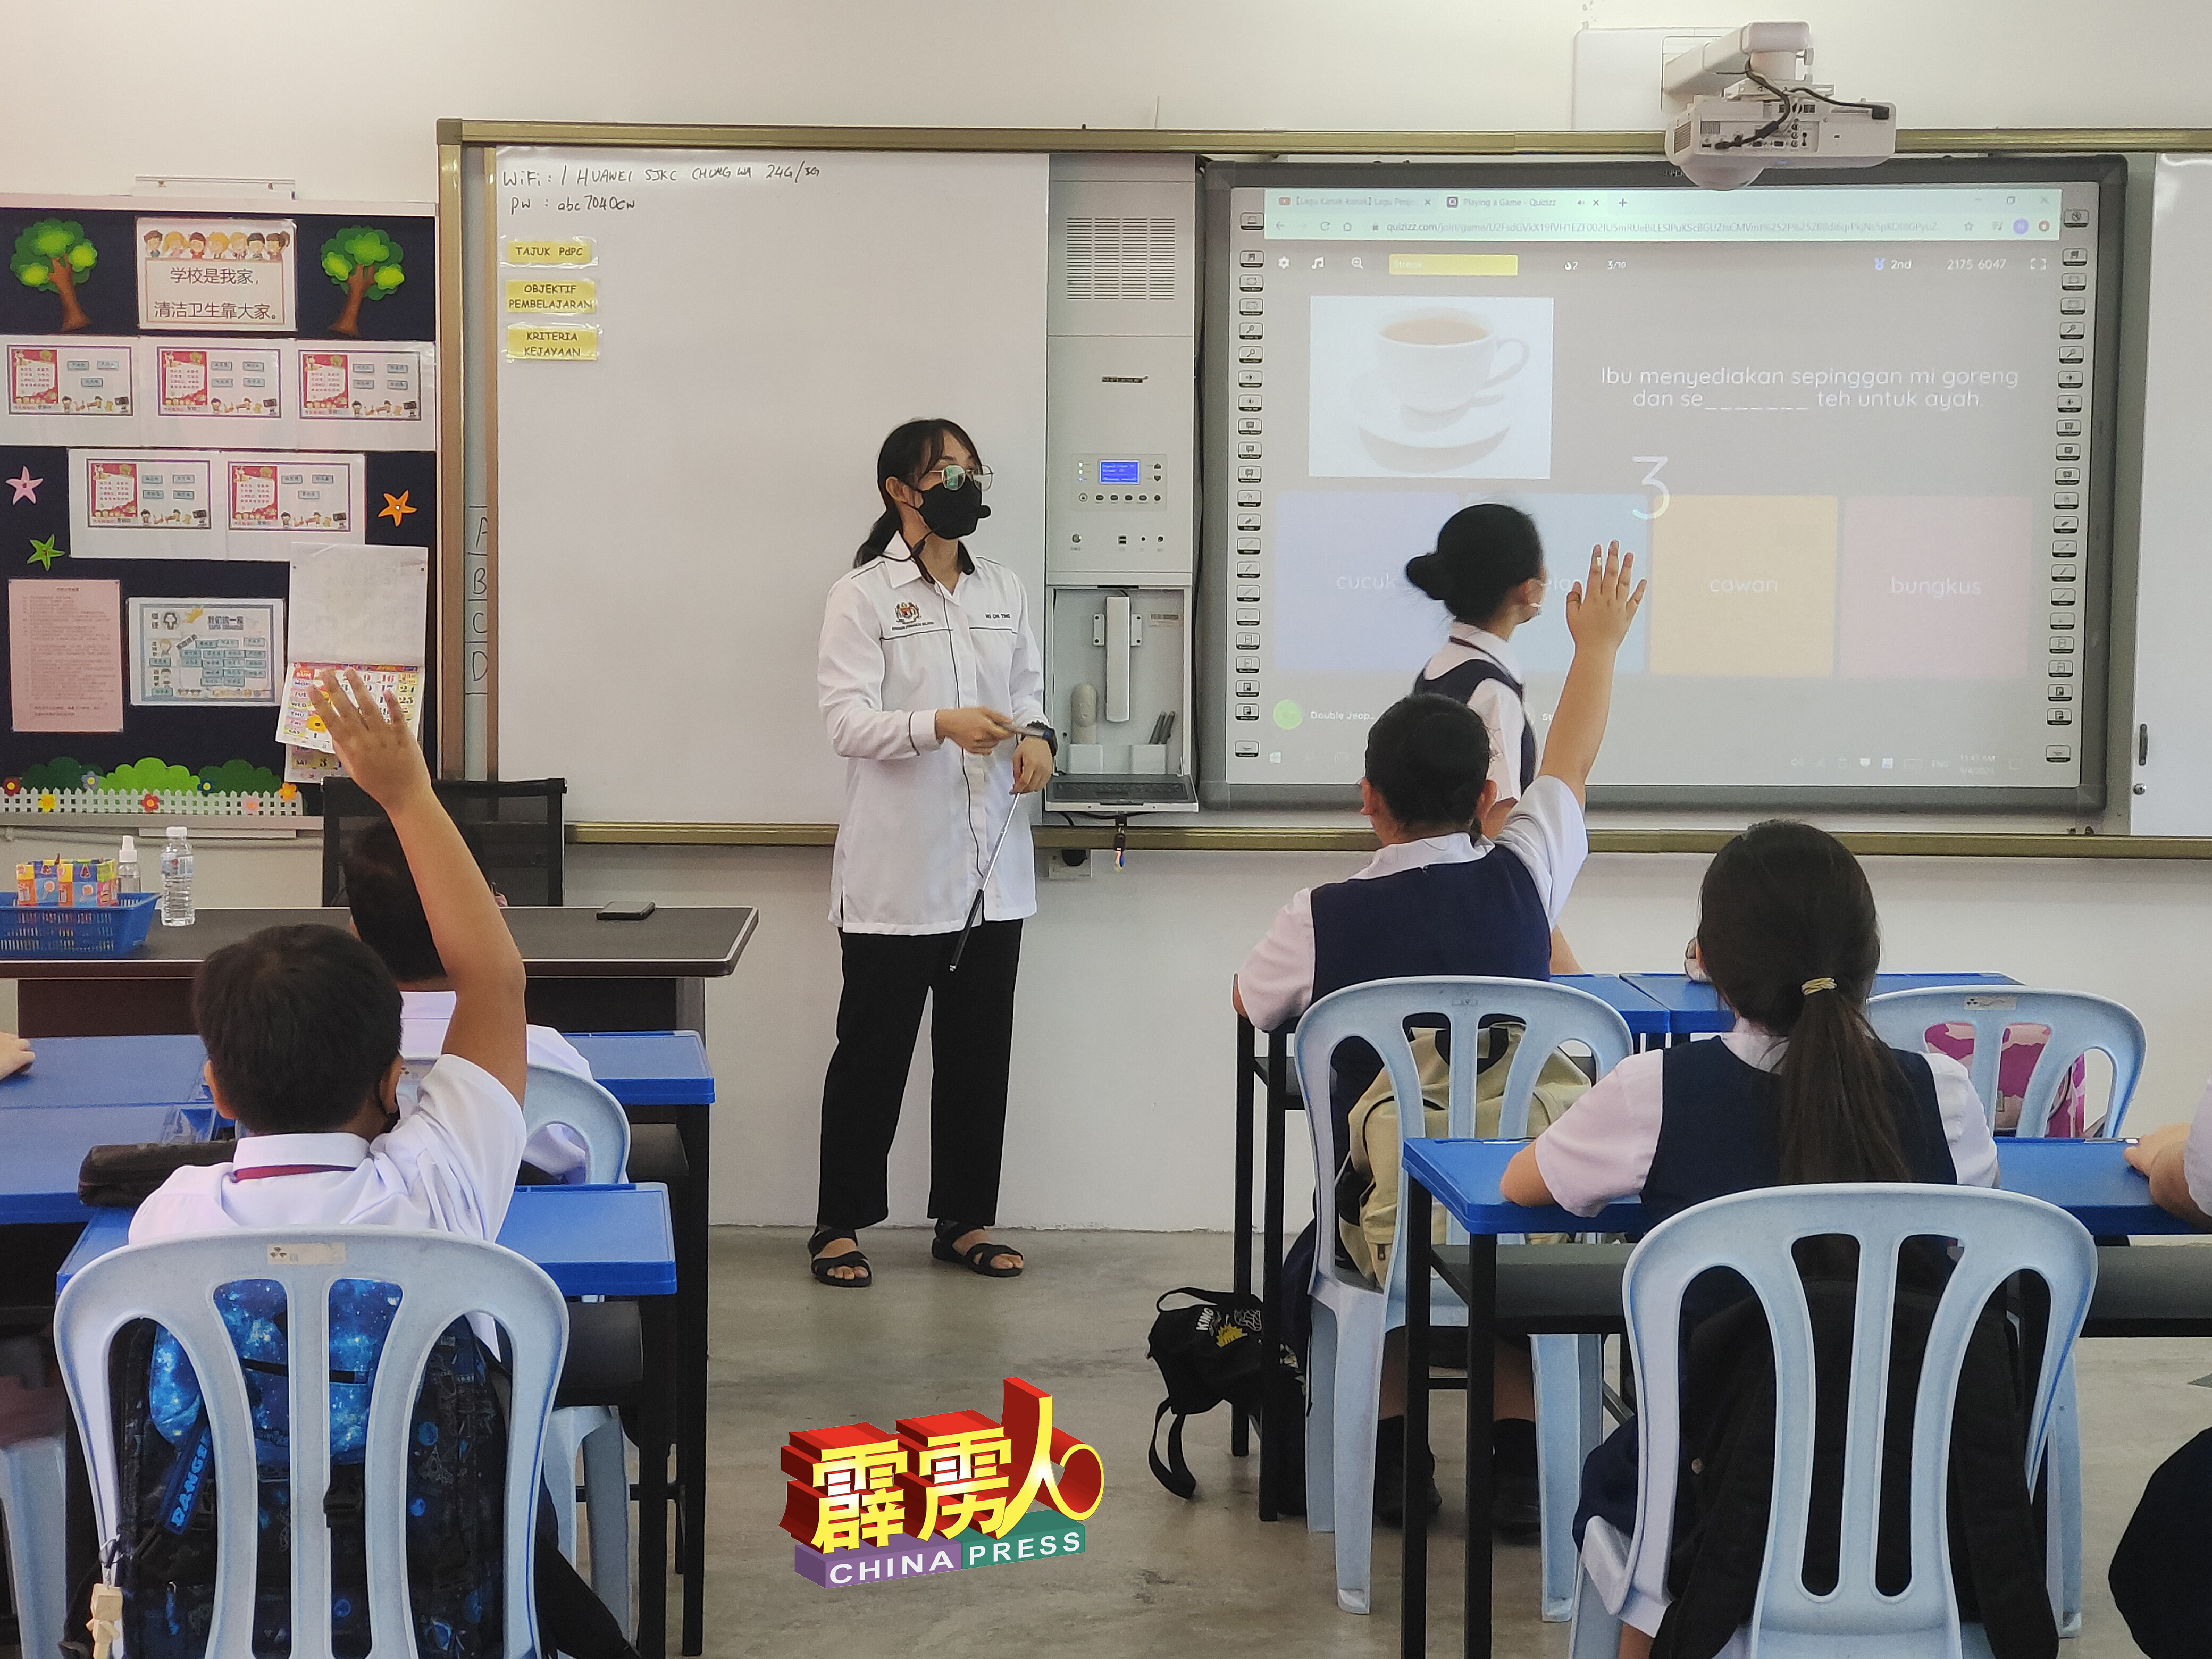 嘉宾们参观宜力中华小学数码教学过程，该校自从採用数码教学后，学生们更投入，更感兴趣学习。